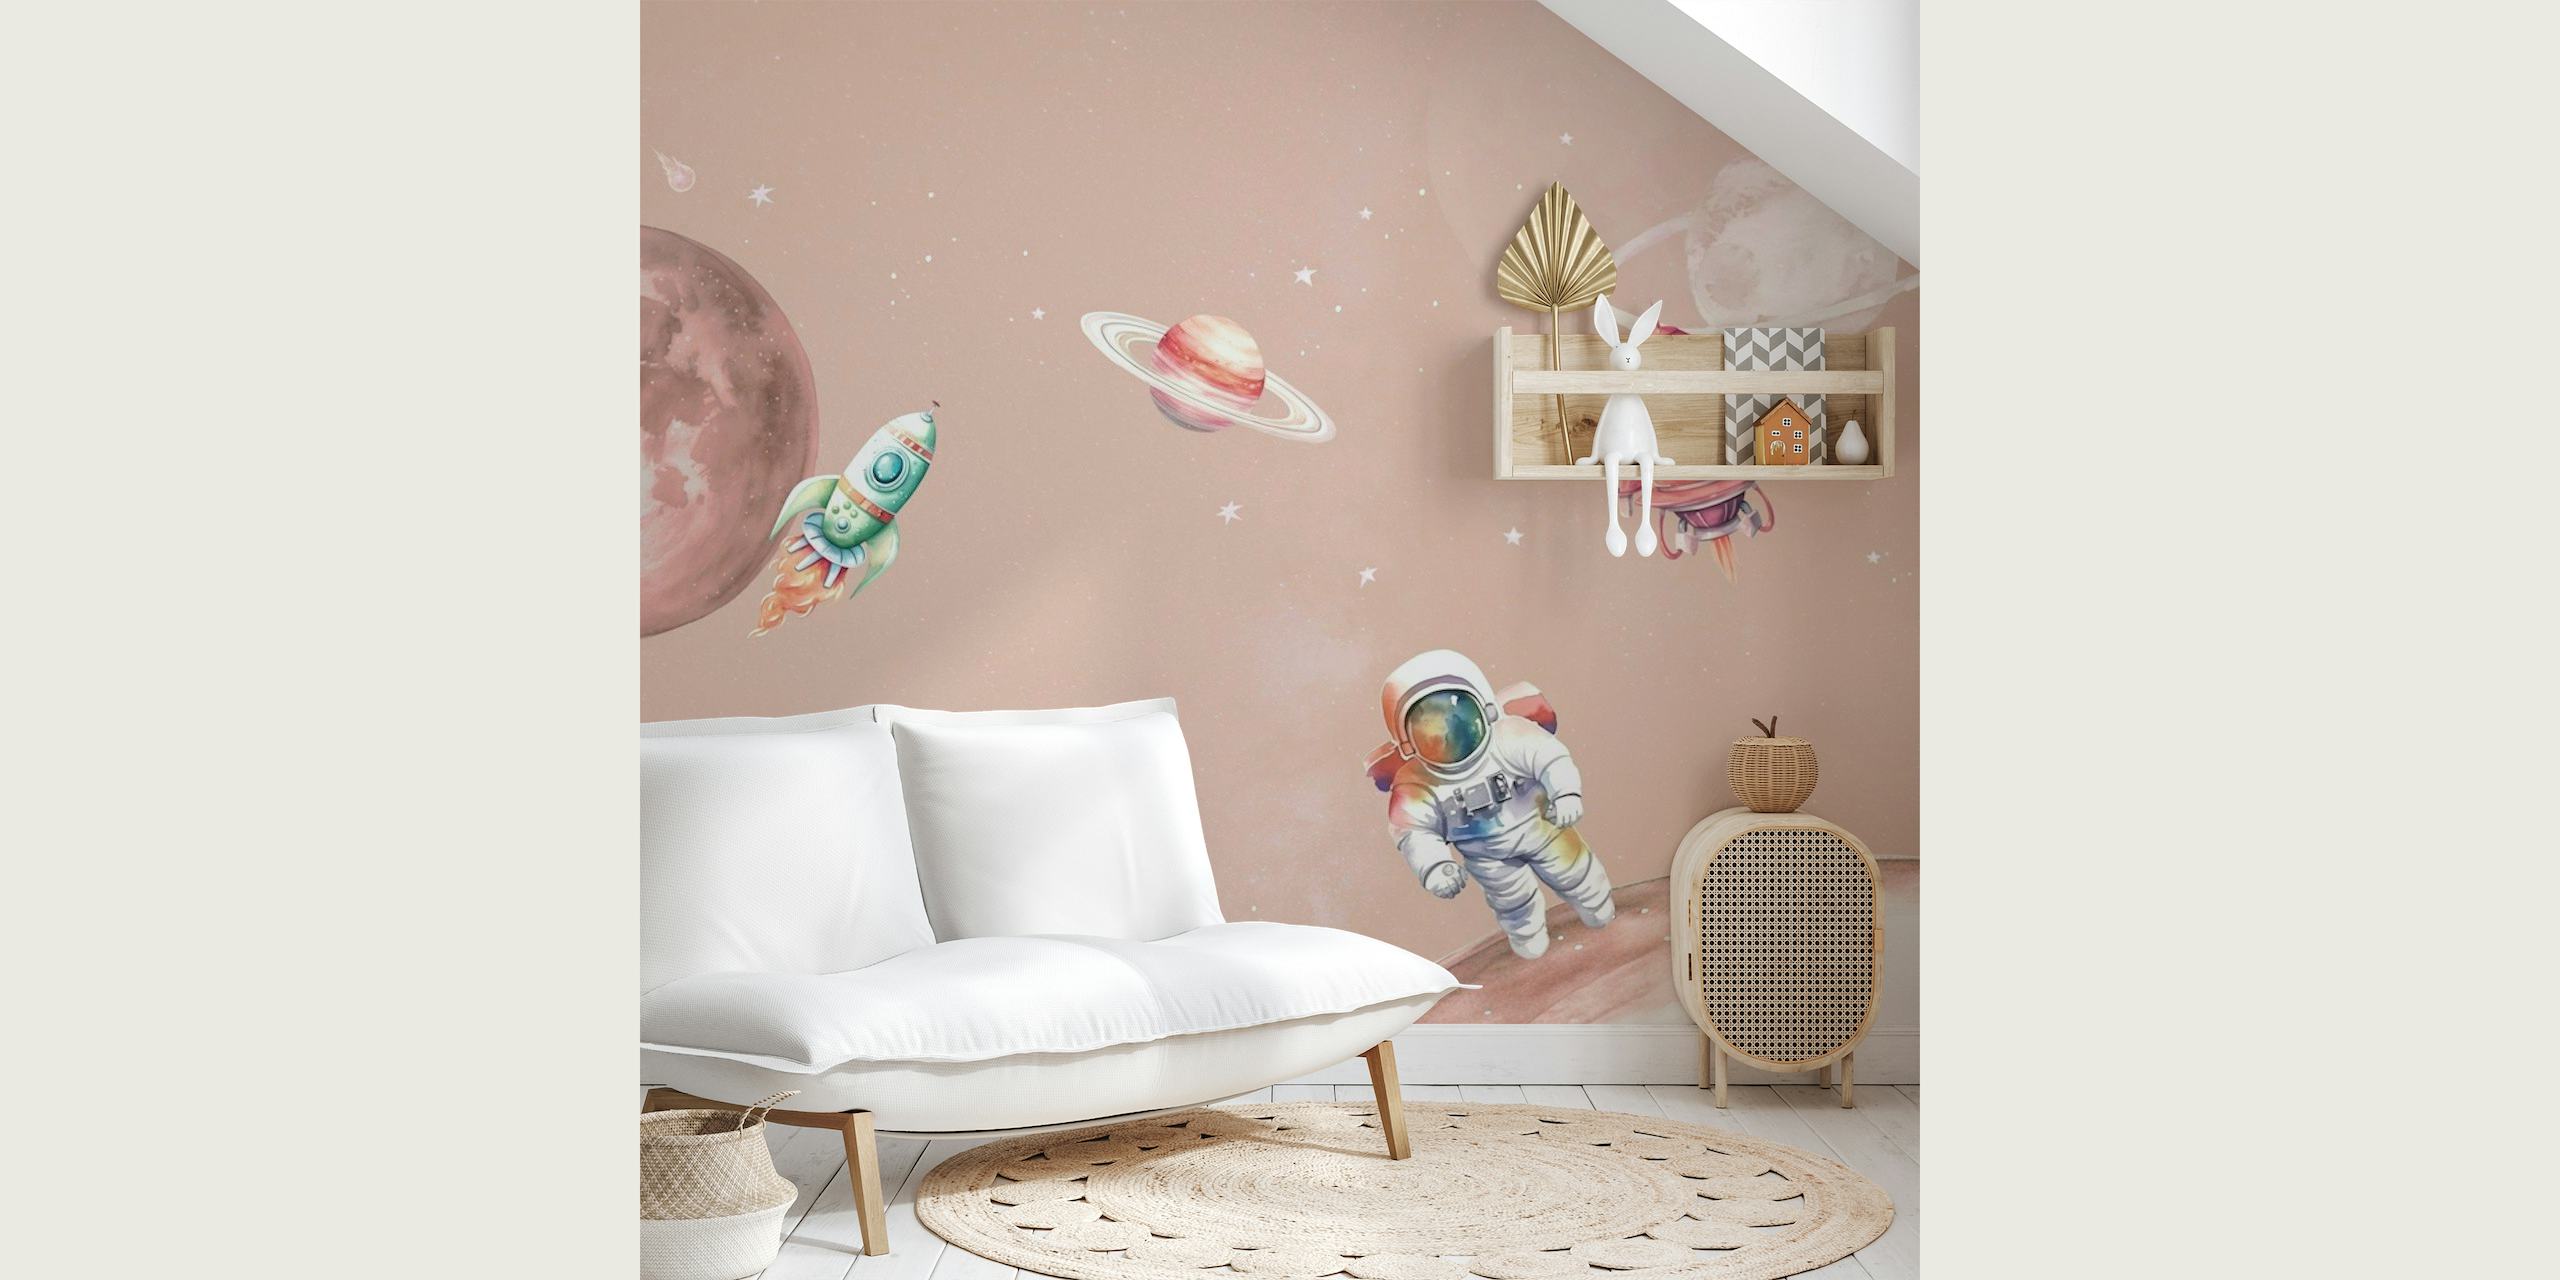 Zidna slika sa svemirskom scenom u crtanom stilu koja prikazuje astronauta, planete i svemirske brodove na ružičastoj pozadini.